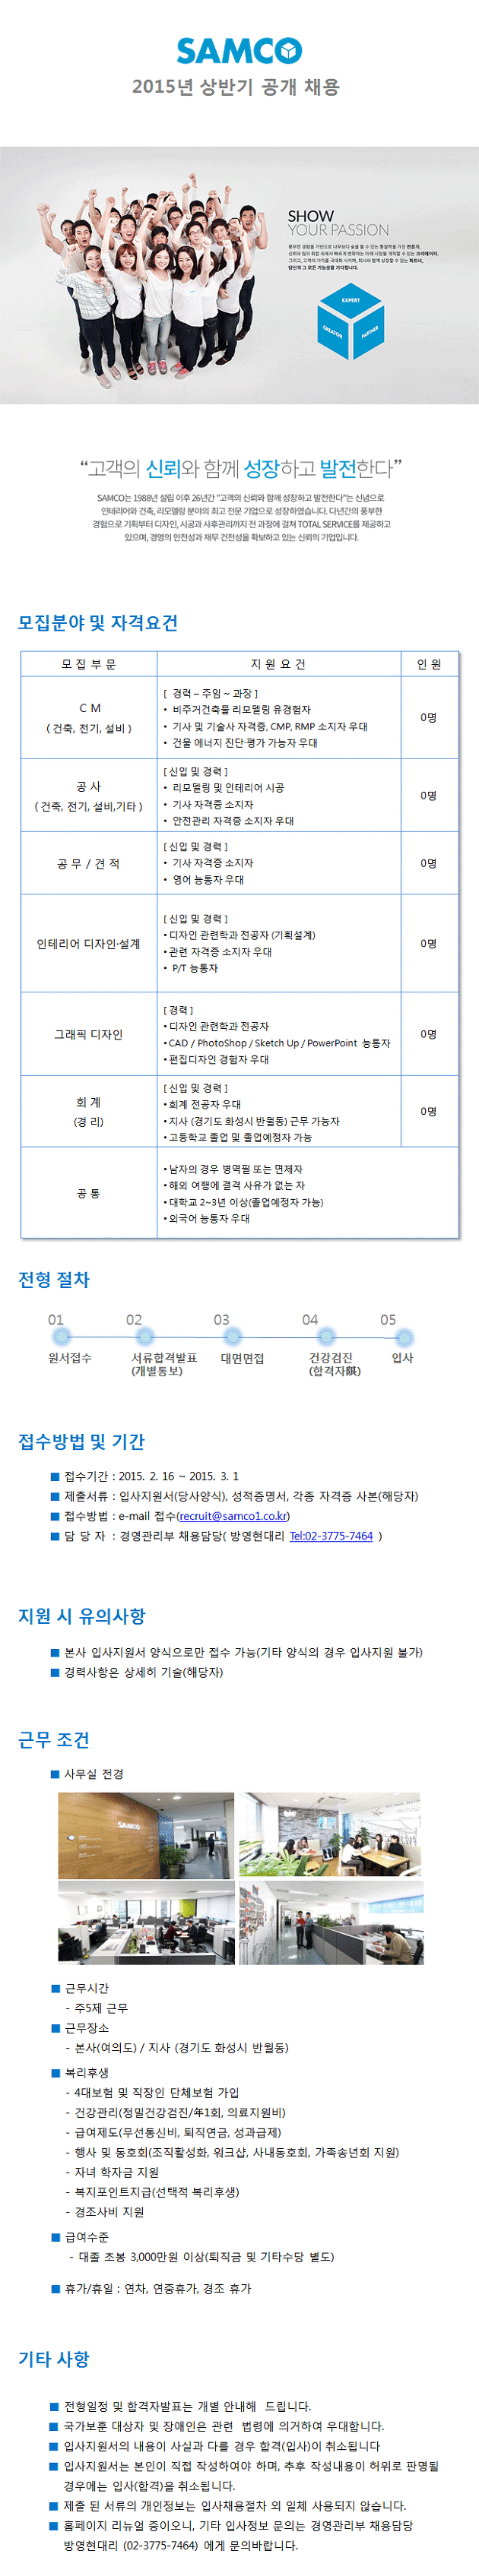 [건설취업] 샘코 2015년 상반기 공개채용 / CM, 공사, 공무, 견적, 인테리어